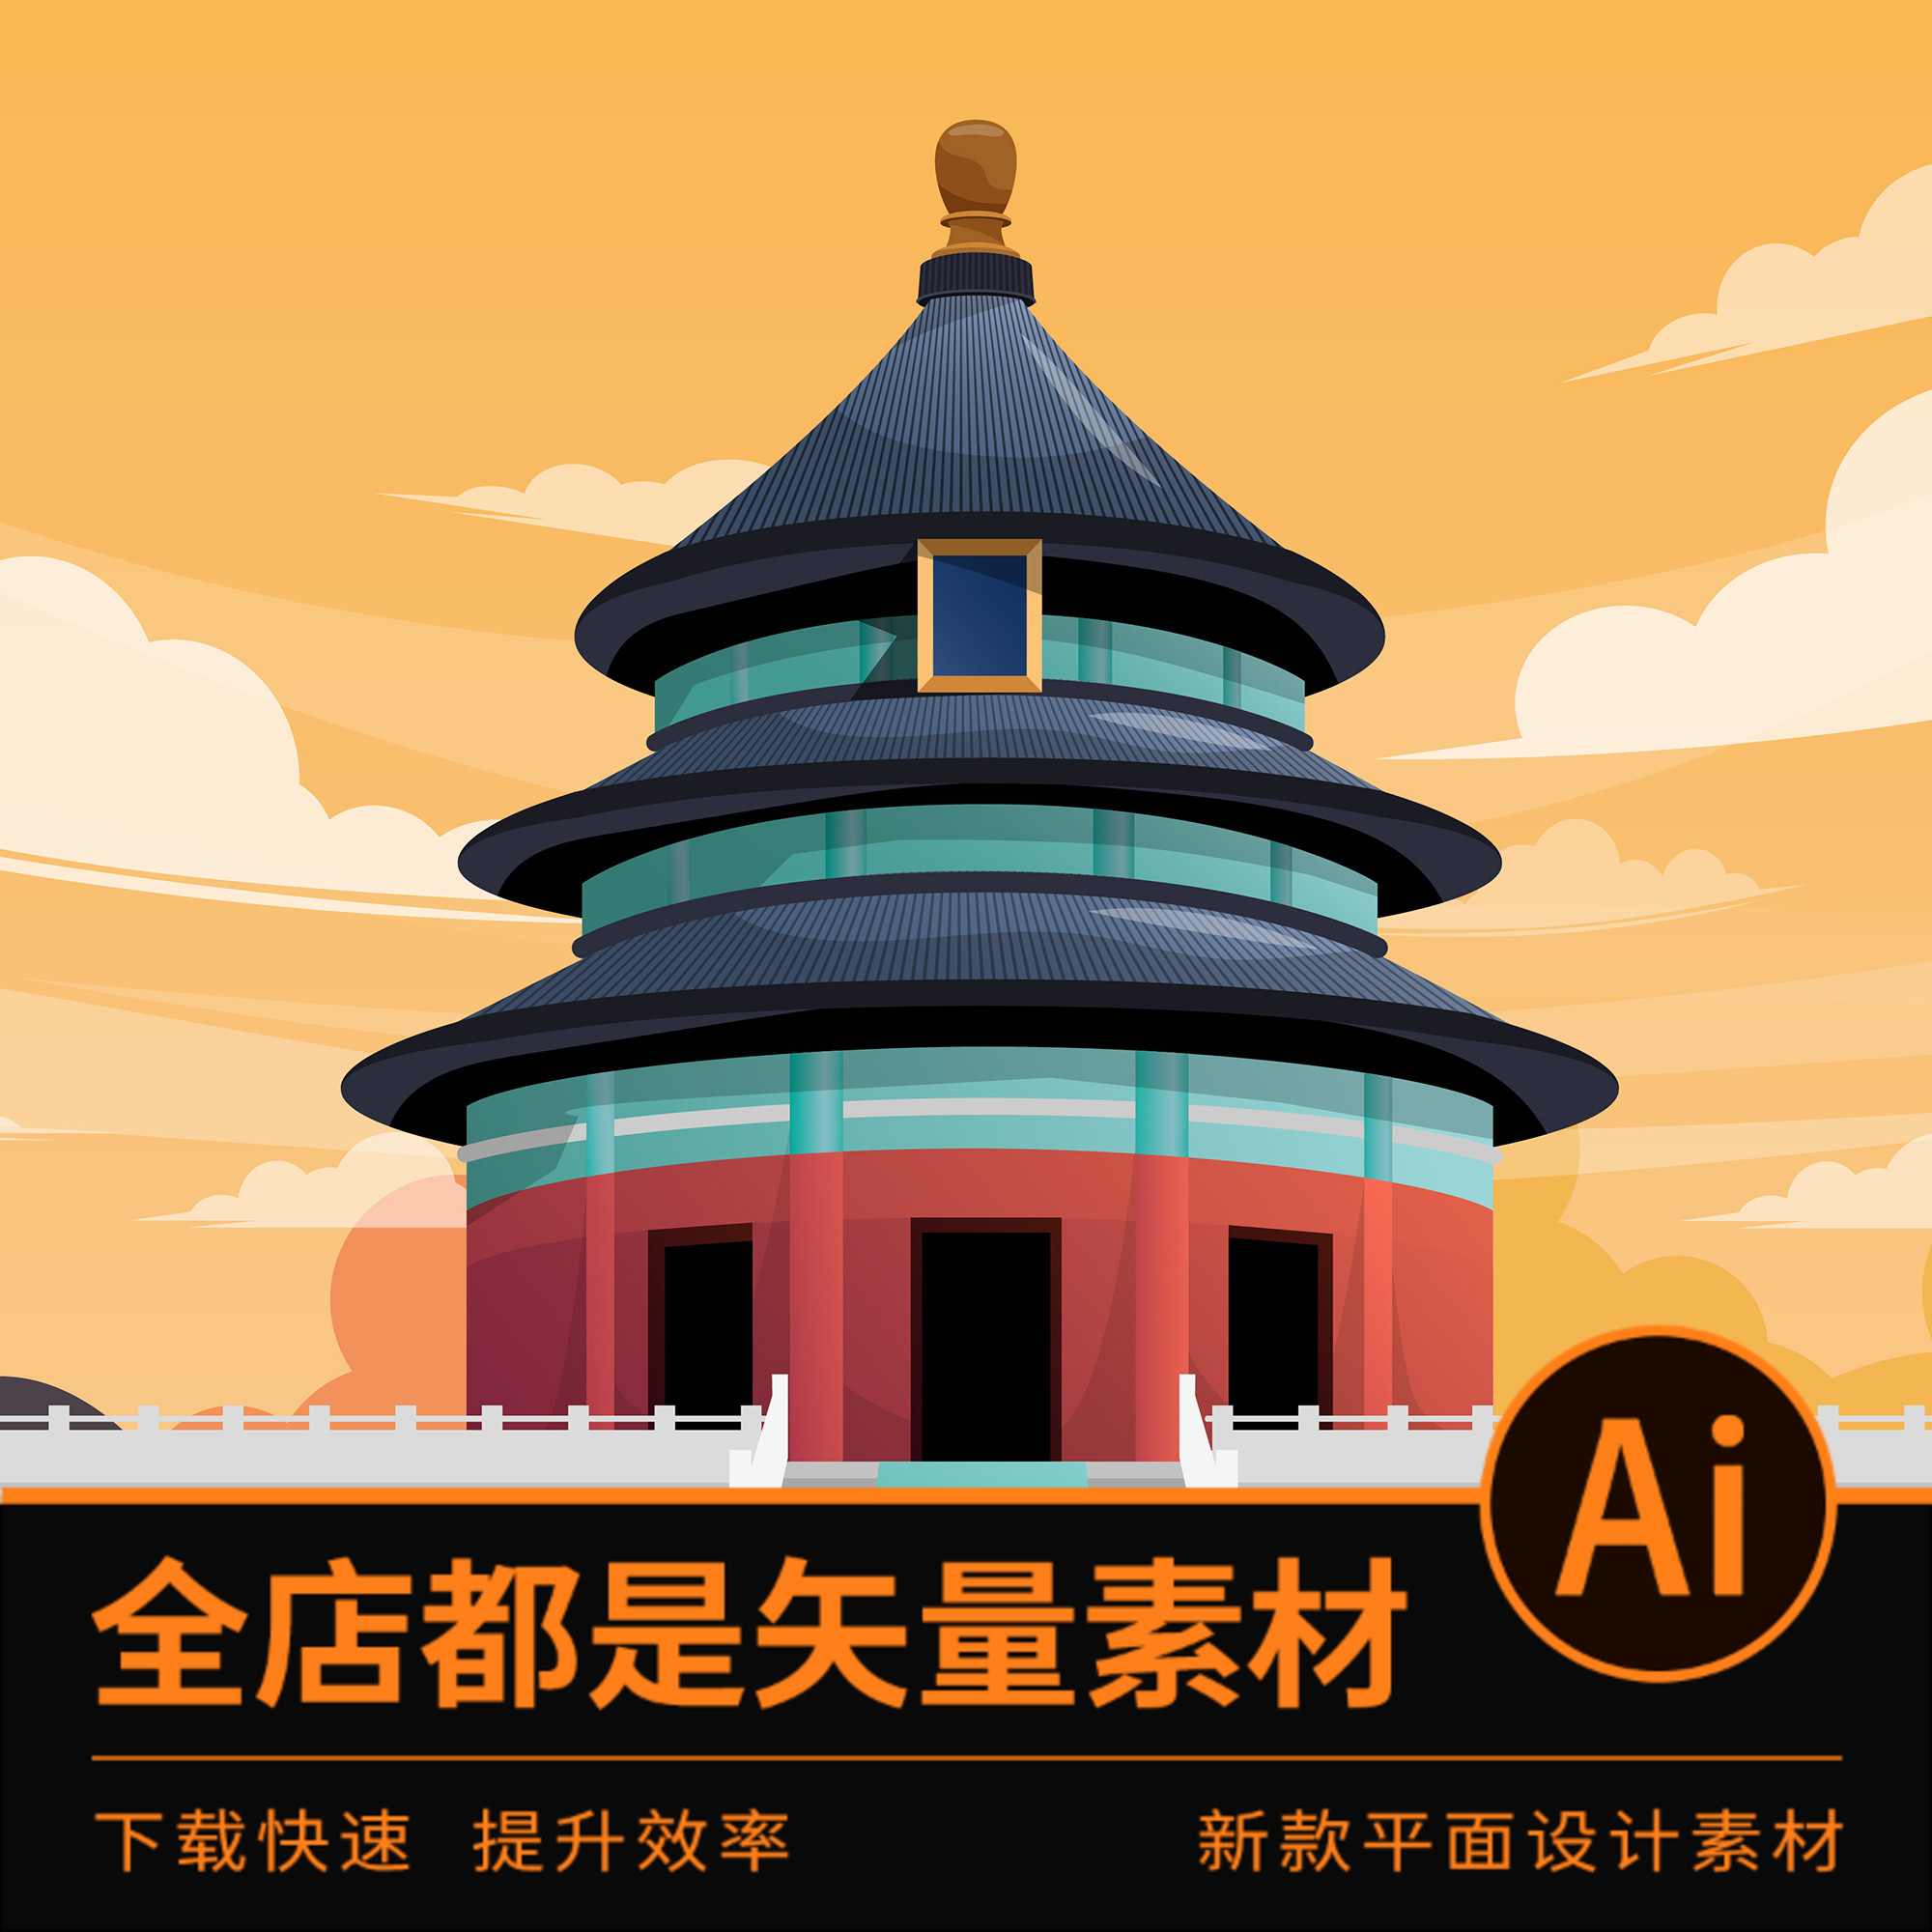 2175ai格式矢量素材北京建筑地标中国著名旅游景点设计明信片海报